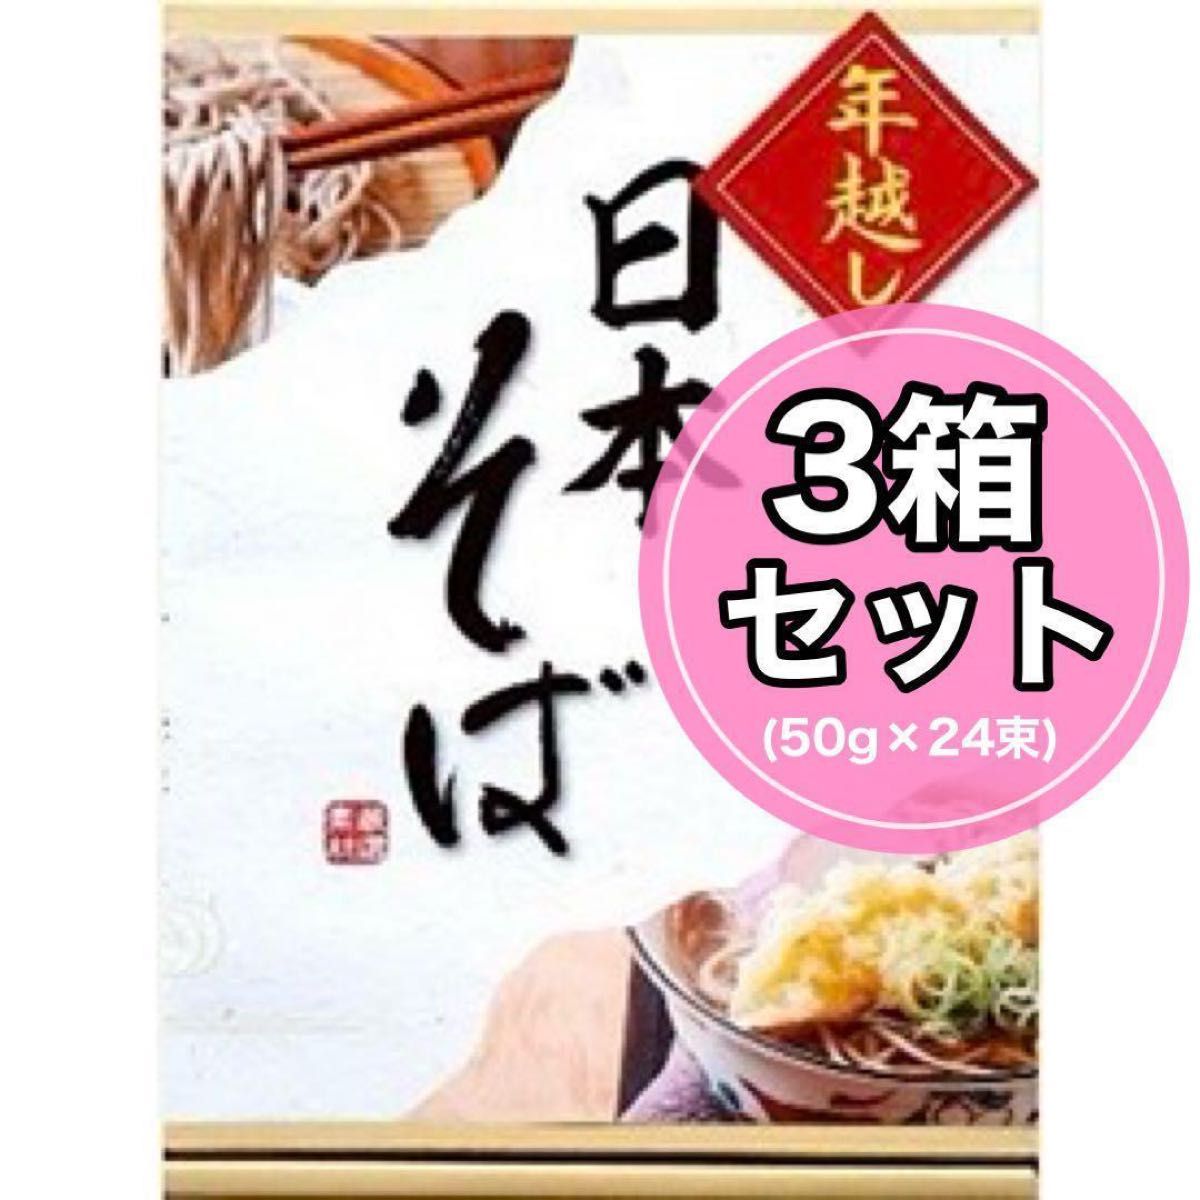 美味しい♪【★3箱セット★】 日本そば 乾麺 50g×8束 そば そば粉配合 蕎麦